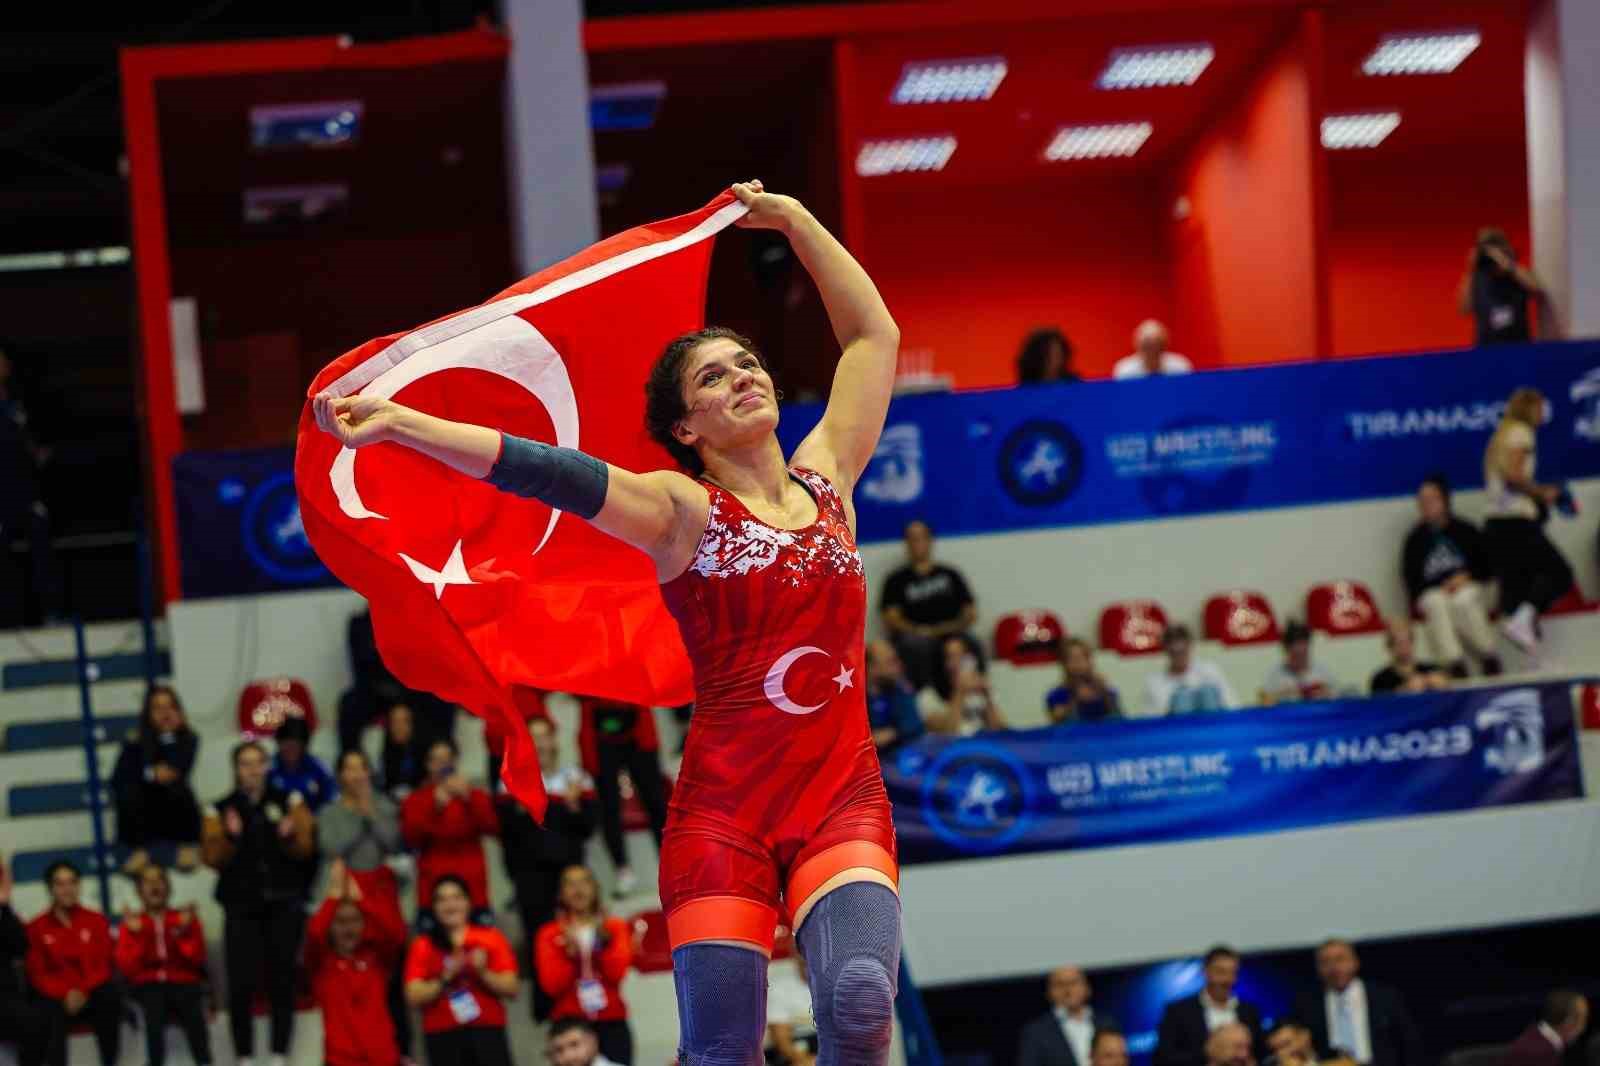 Milli Güreşçi Nesrin Baş:  Türk kadınının gücünü gösterdiğim için mutluyum 